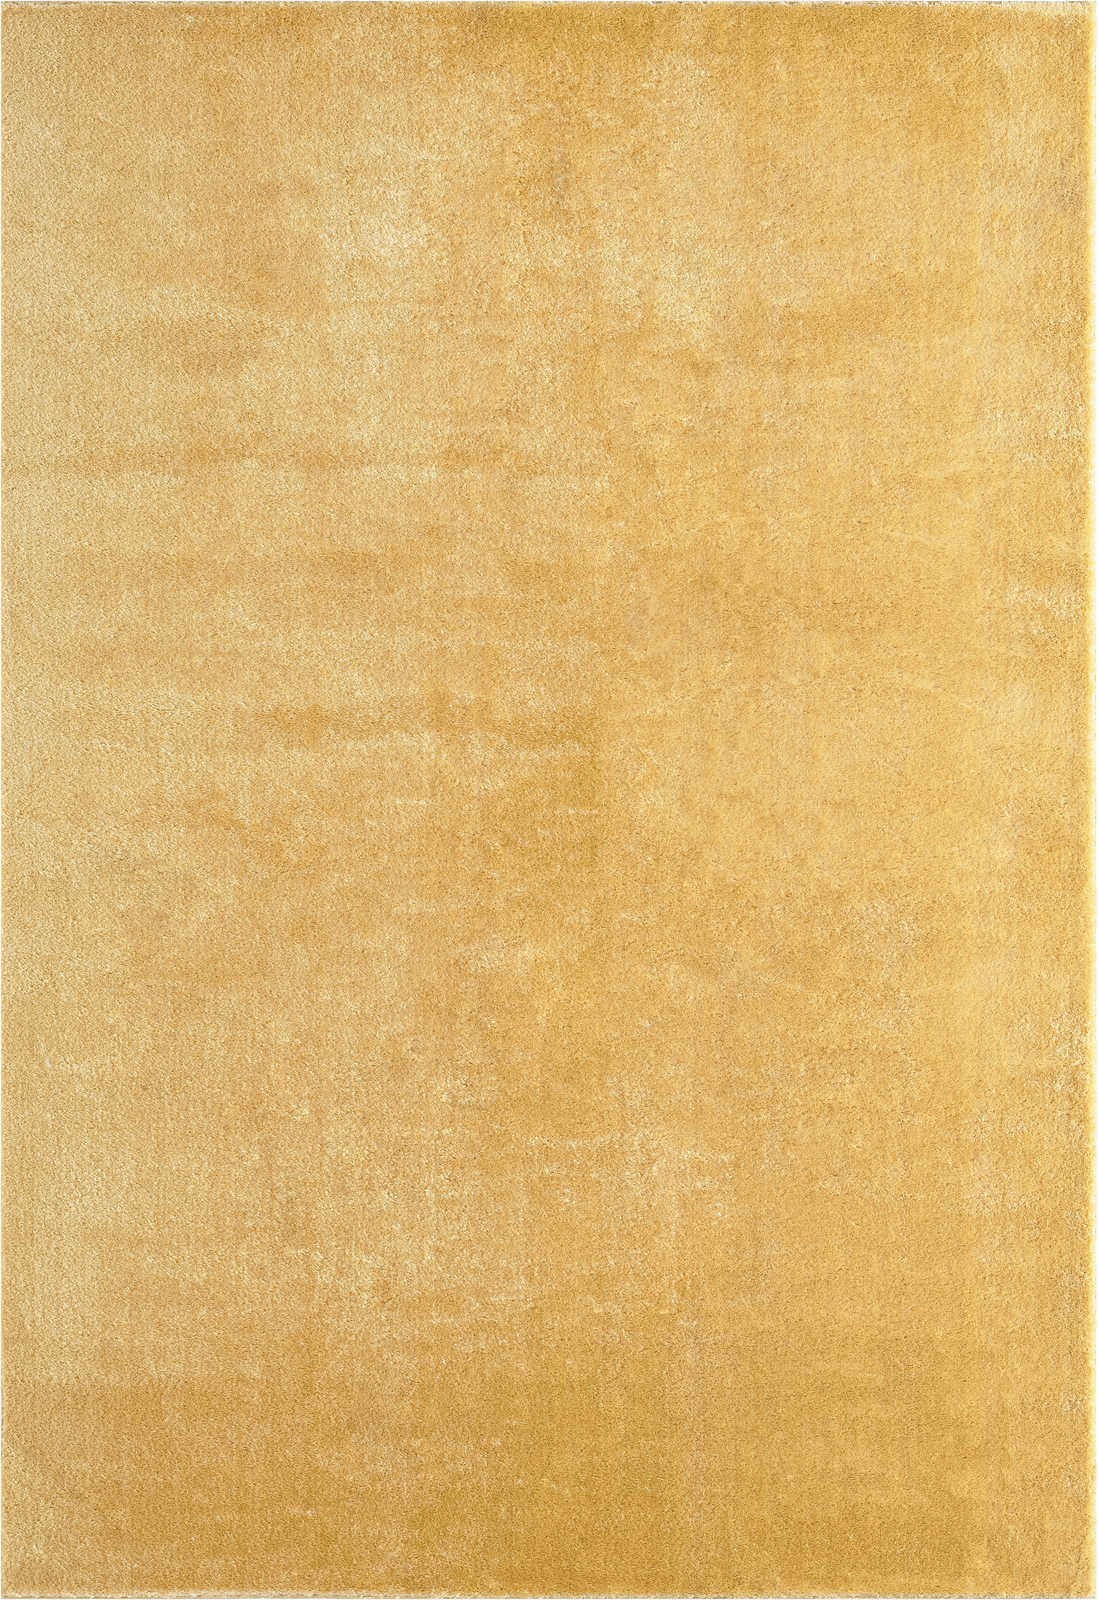             Tappeto a pelo alto morbido e coccoloso in oro - 110 x 60 cm
        